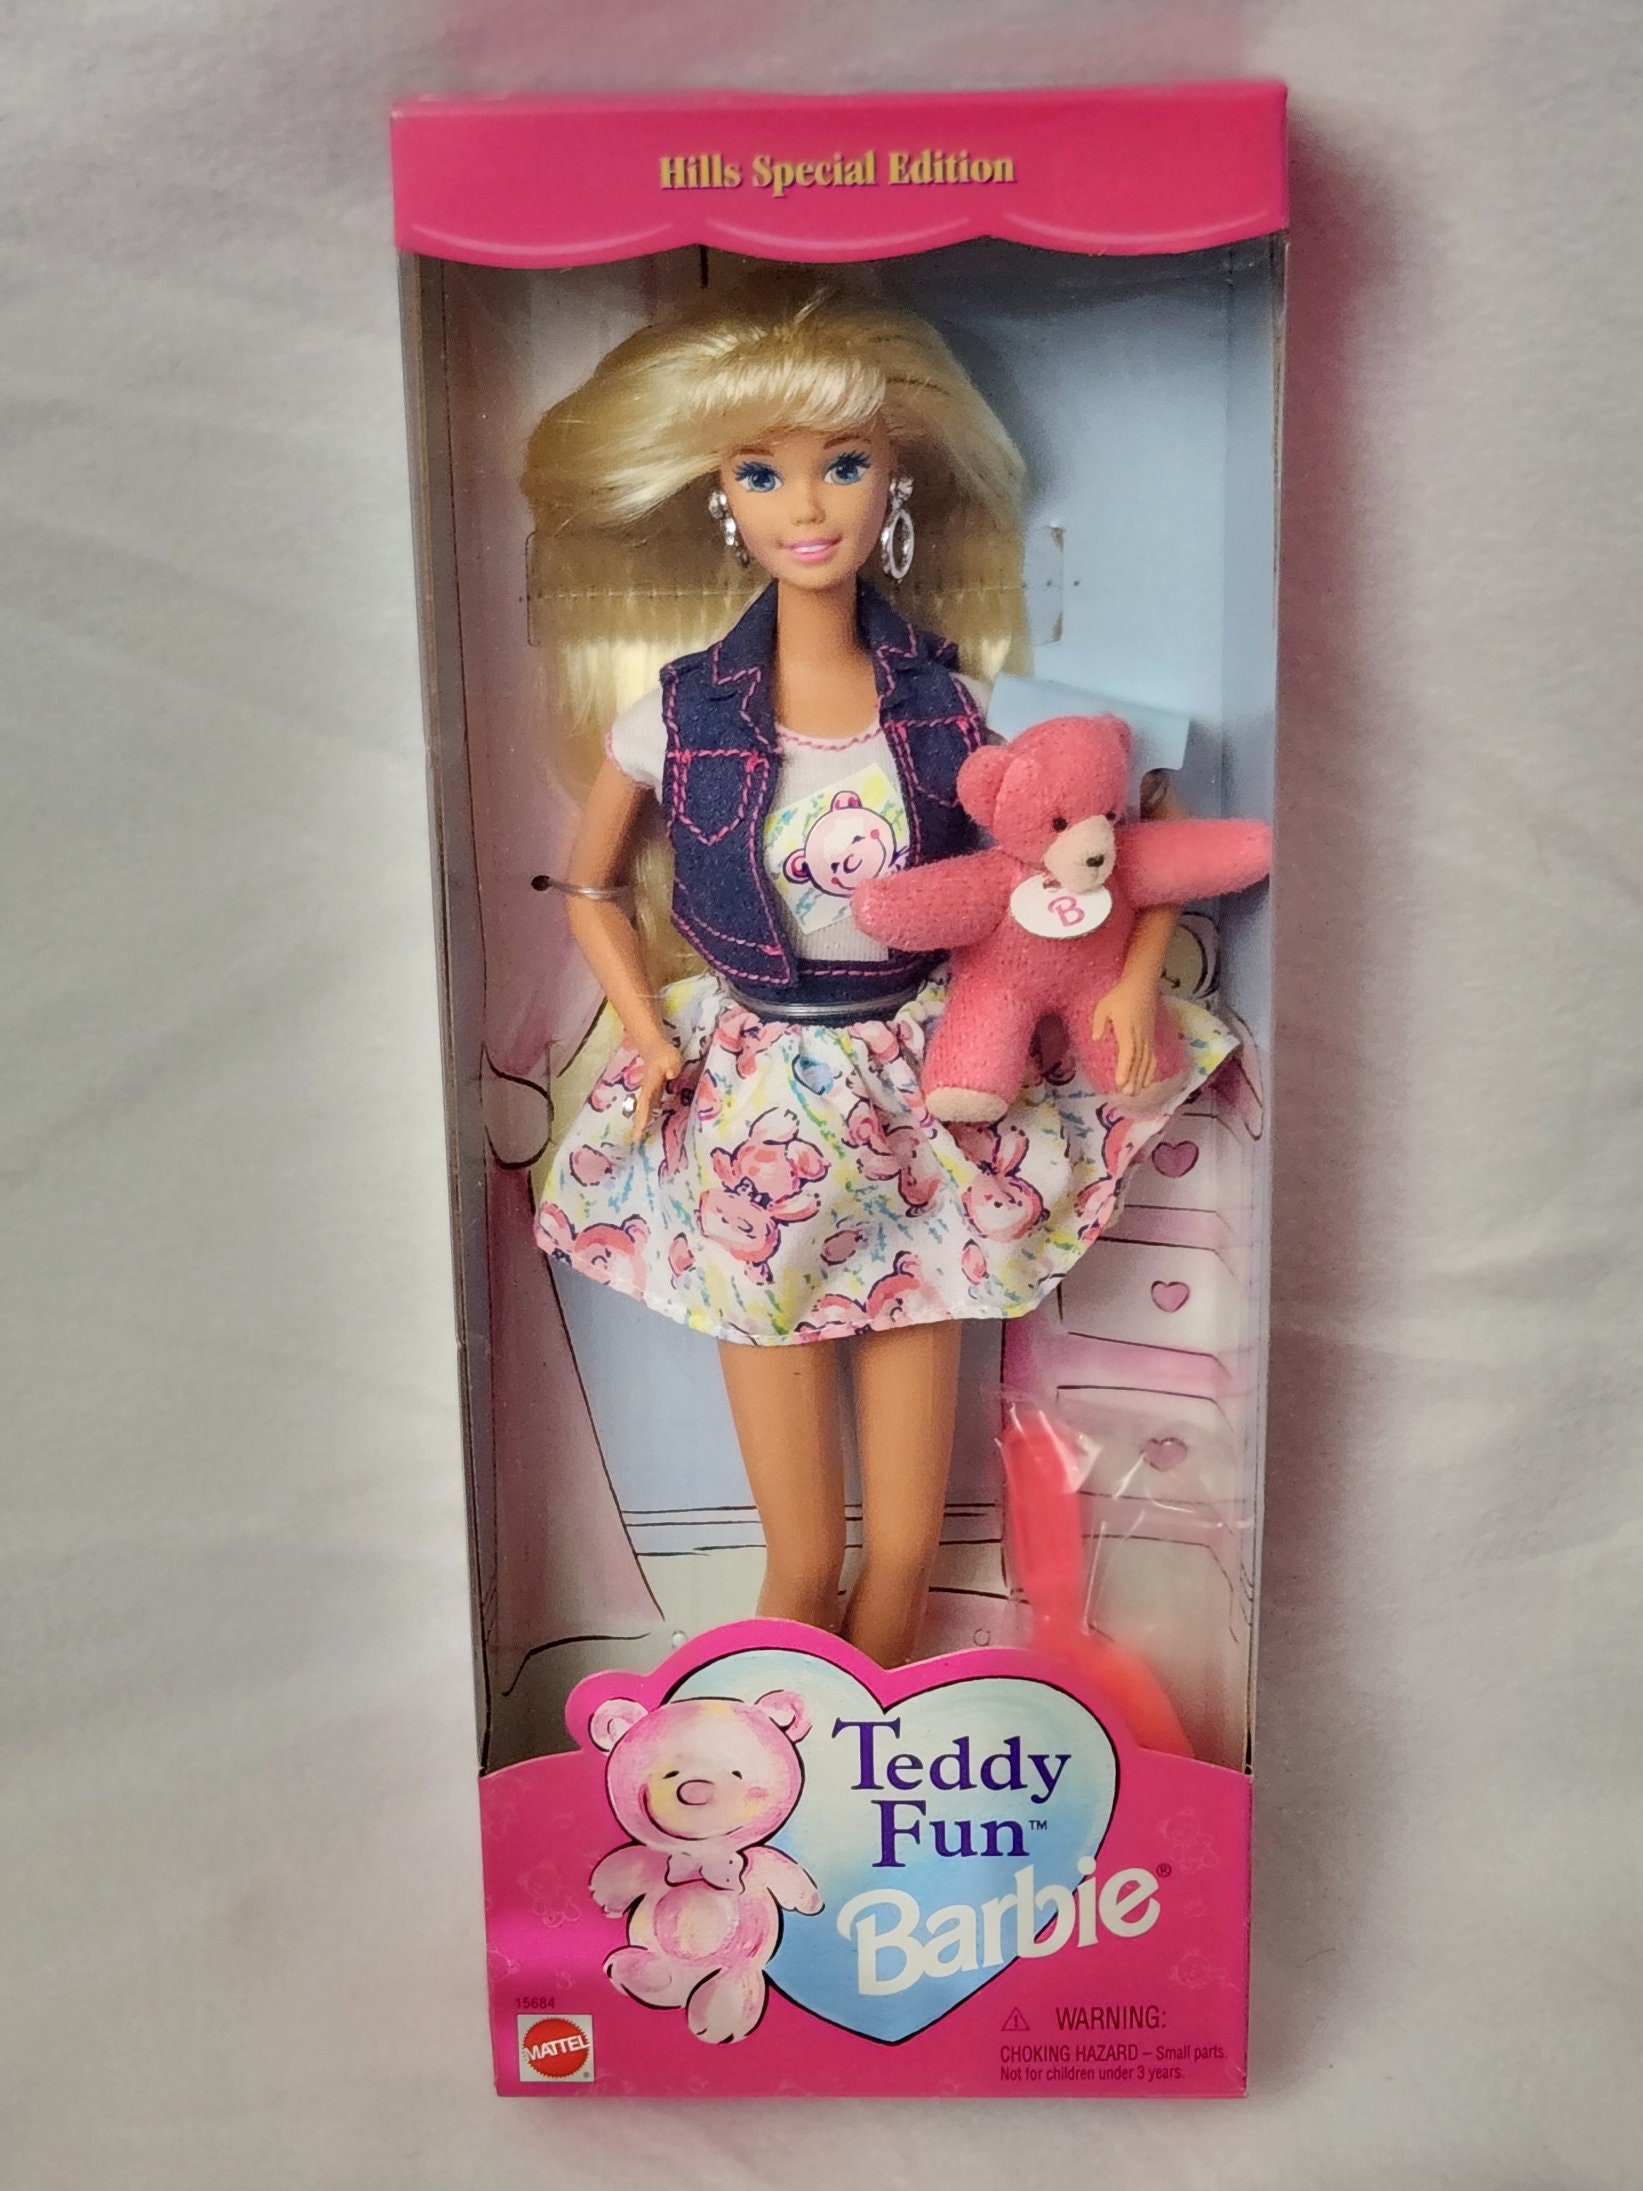 Magne Doodle Barbie (1992)